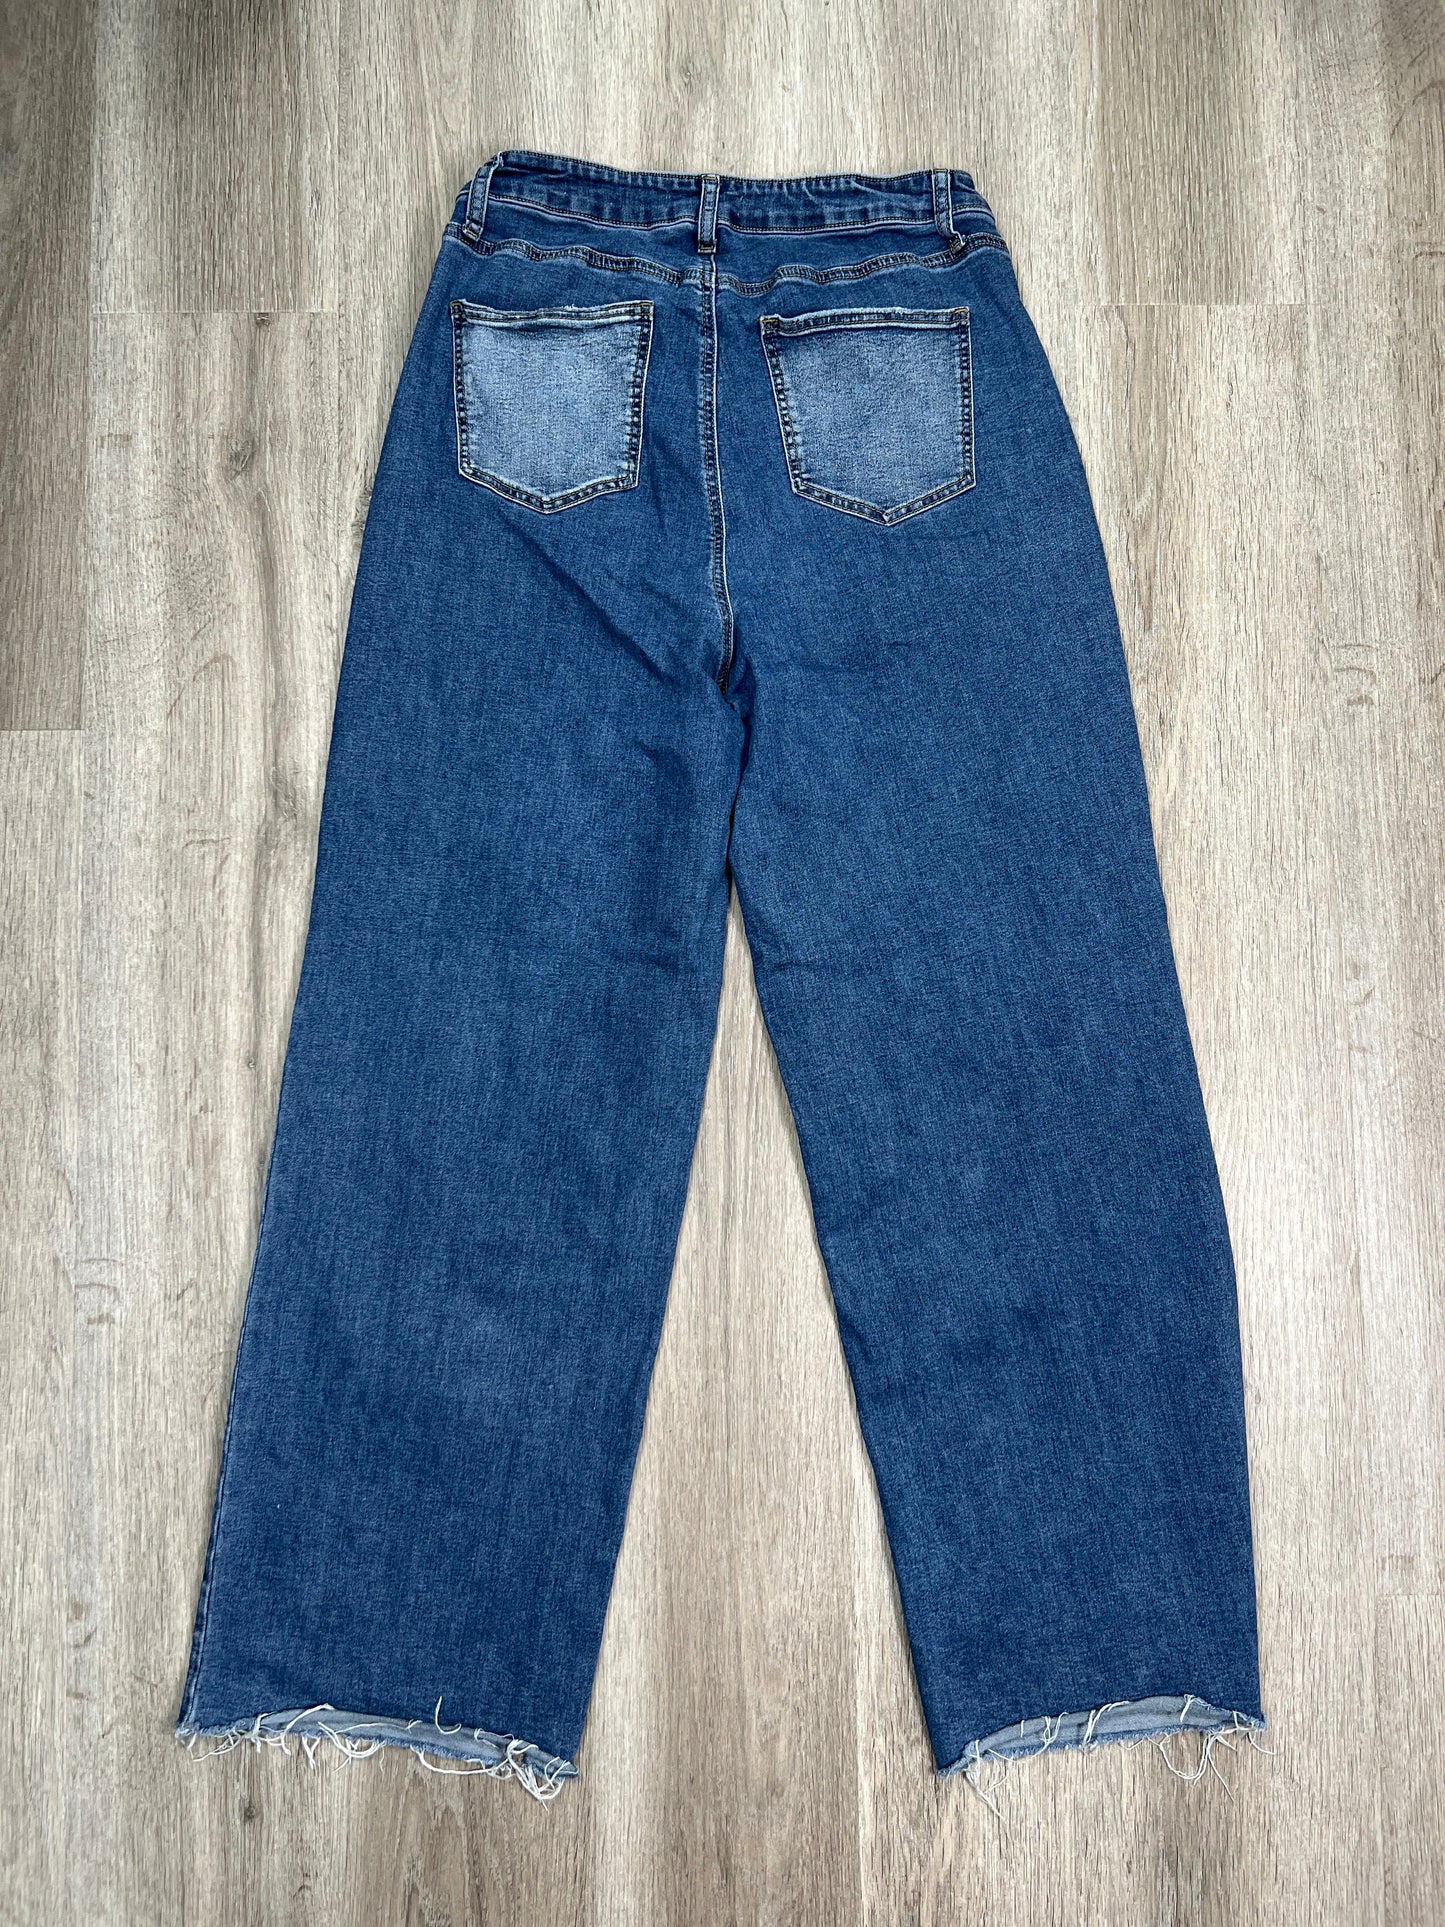 Blue Denim Jeans Boot Cut Clothes Mentor, Size 16